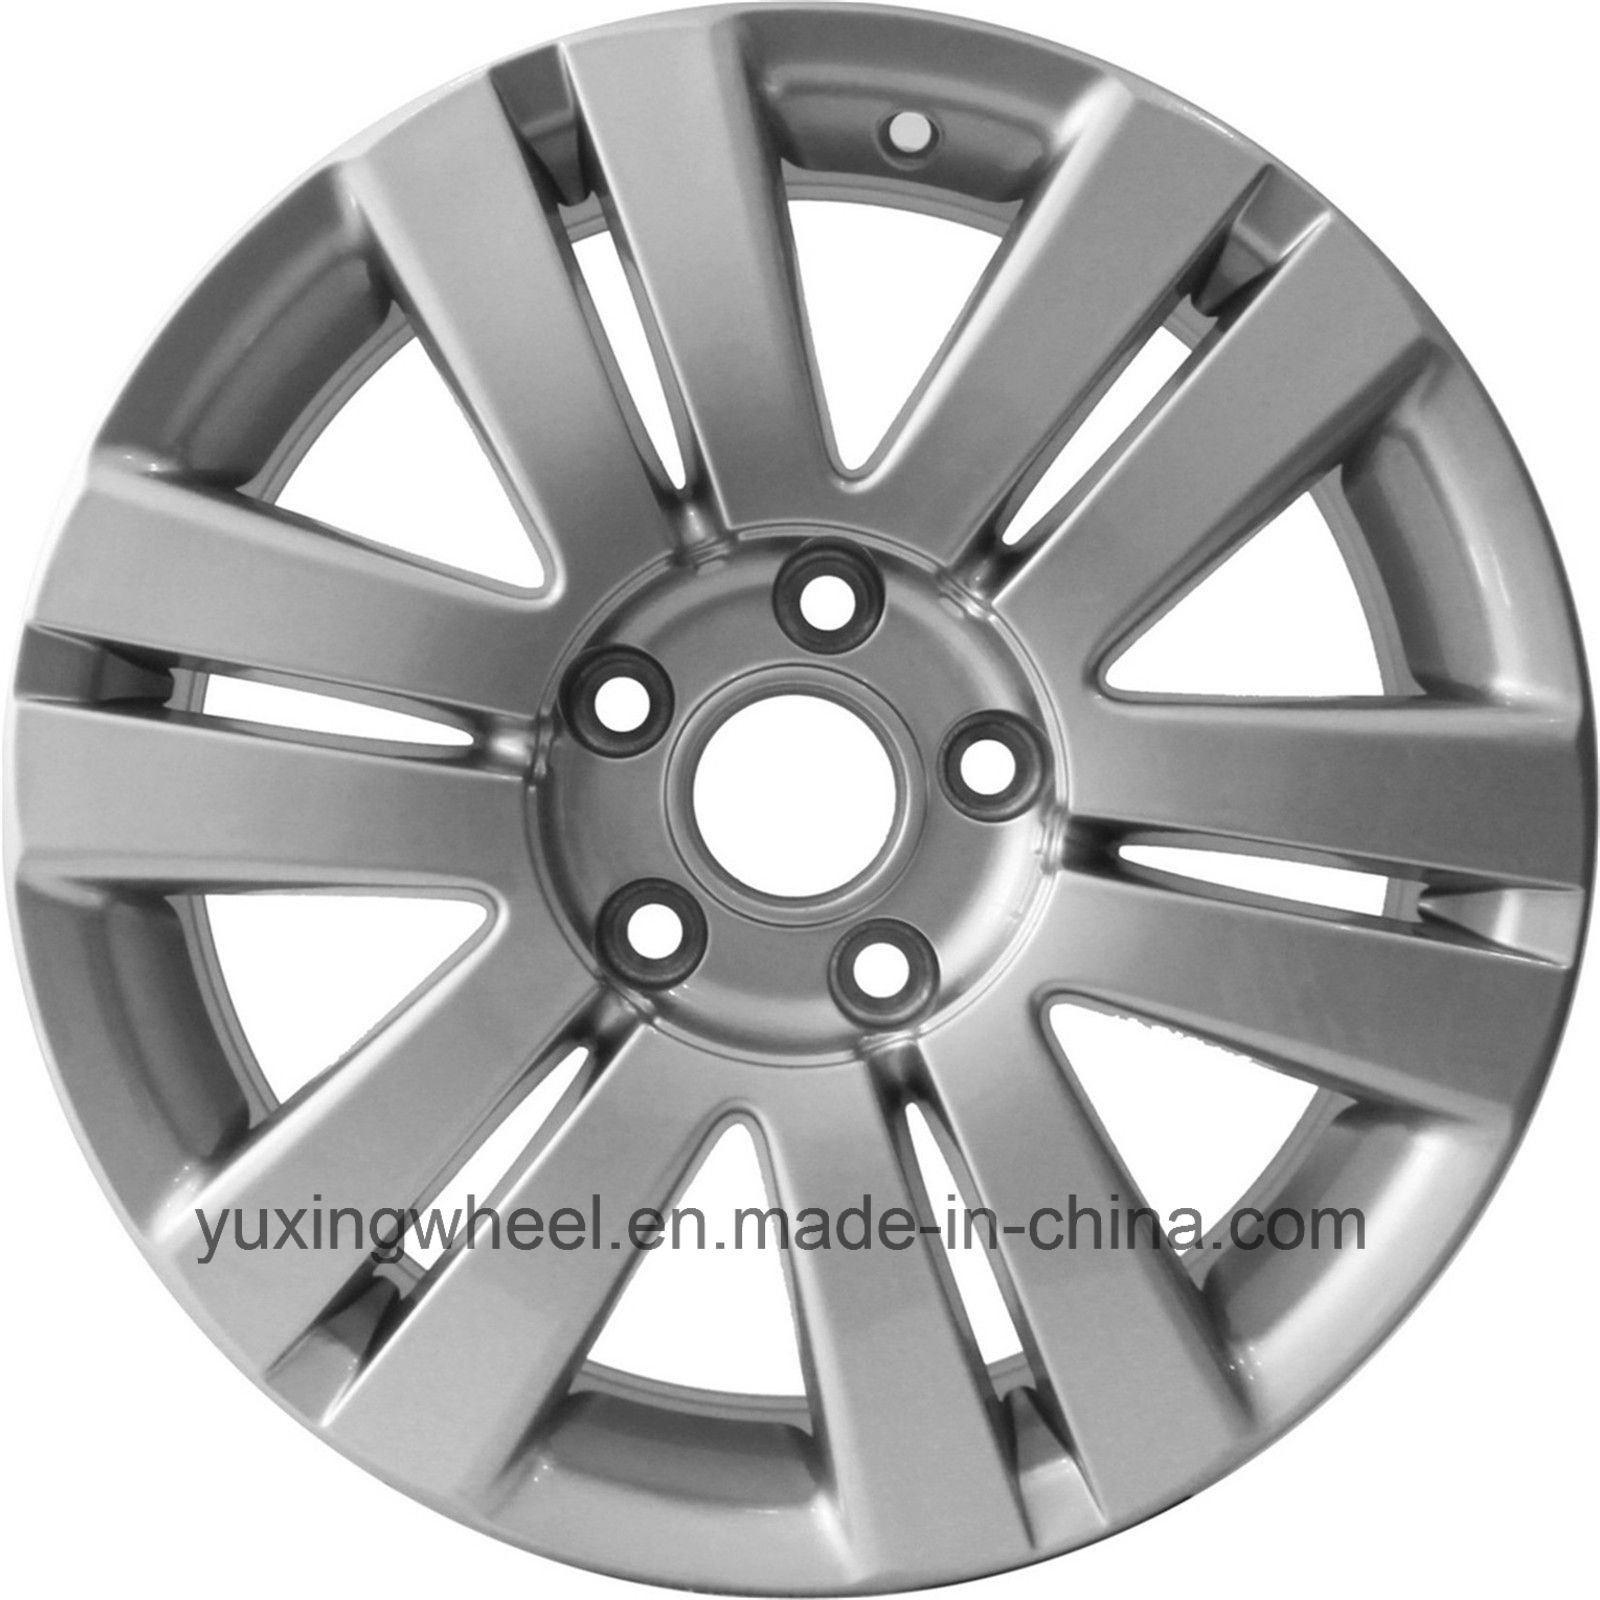 16 Inch Replica Alloy Wheel for Volkswagen Parts